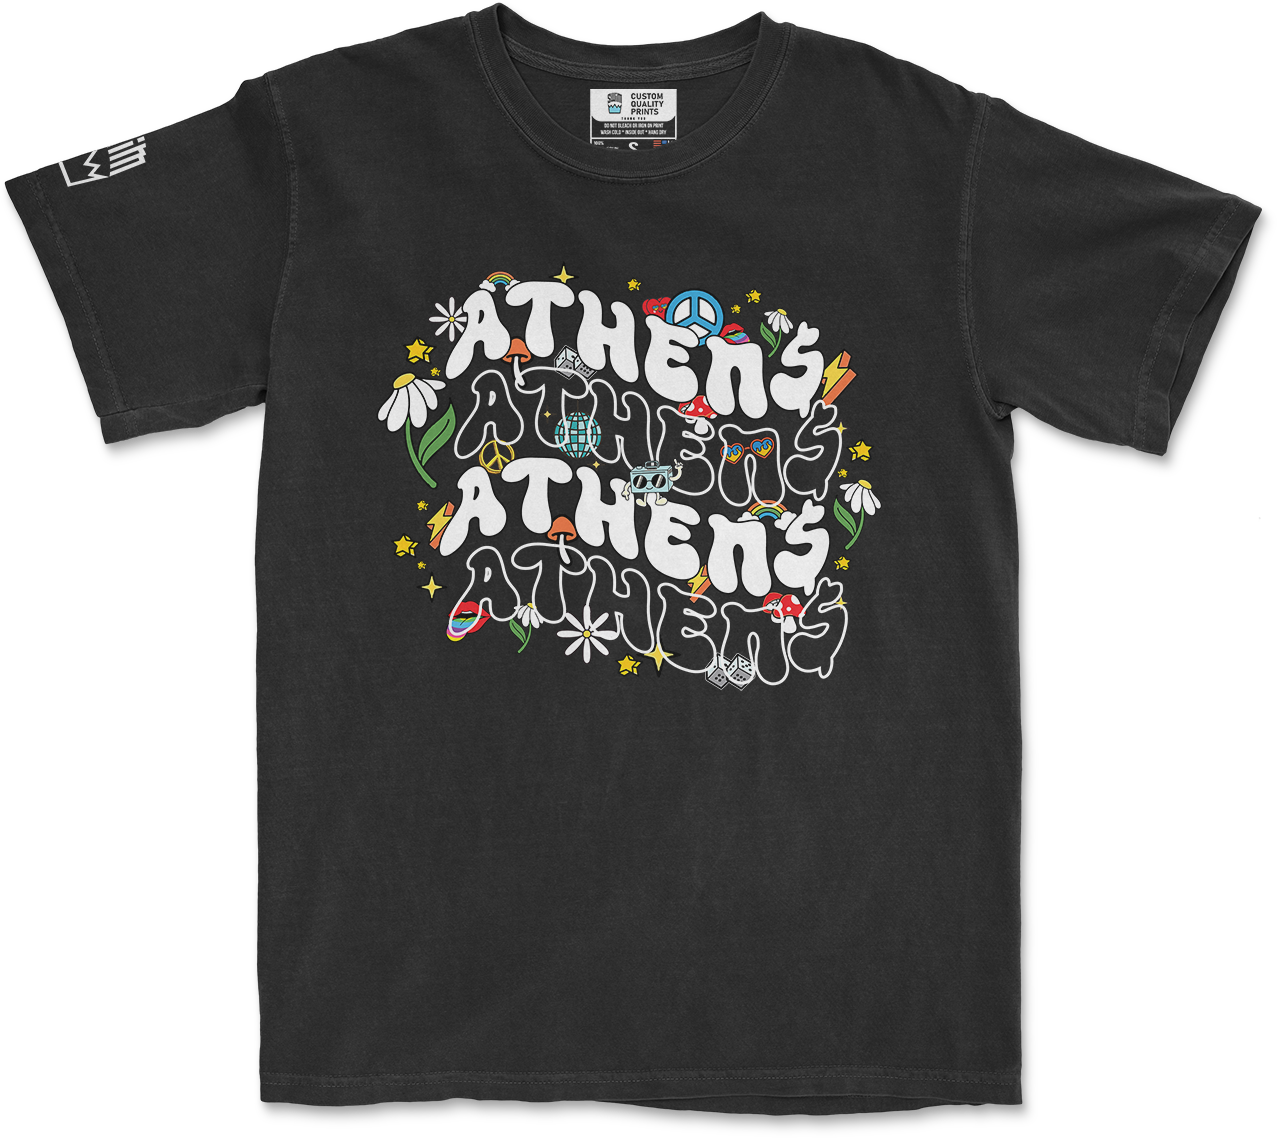 Athens Retro T-Shirt (Black)